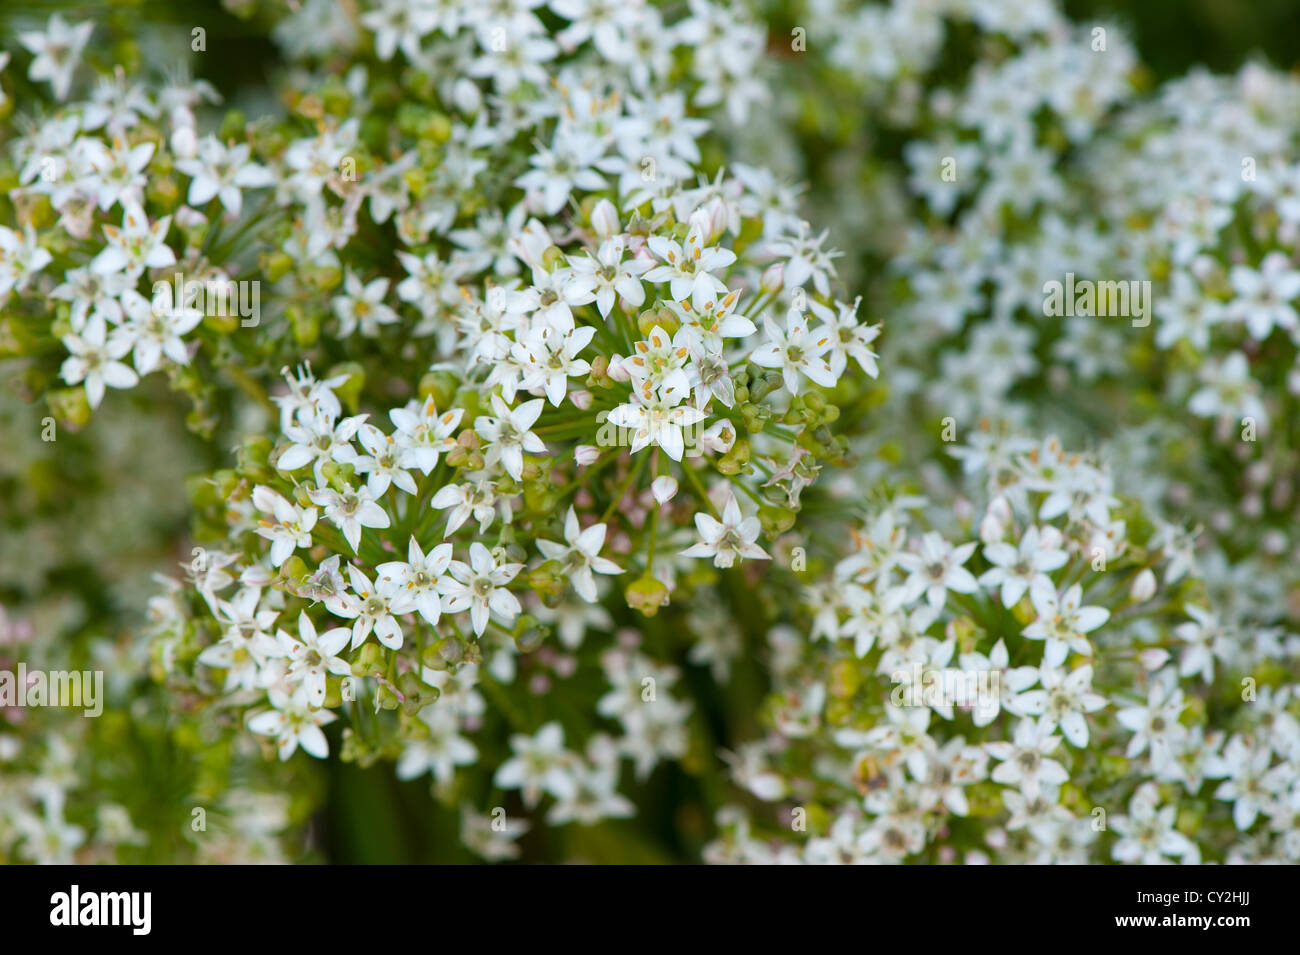 Aglio erba cipollina, Allium tuberosum,nel pieno fiore Foto Stock